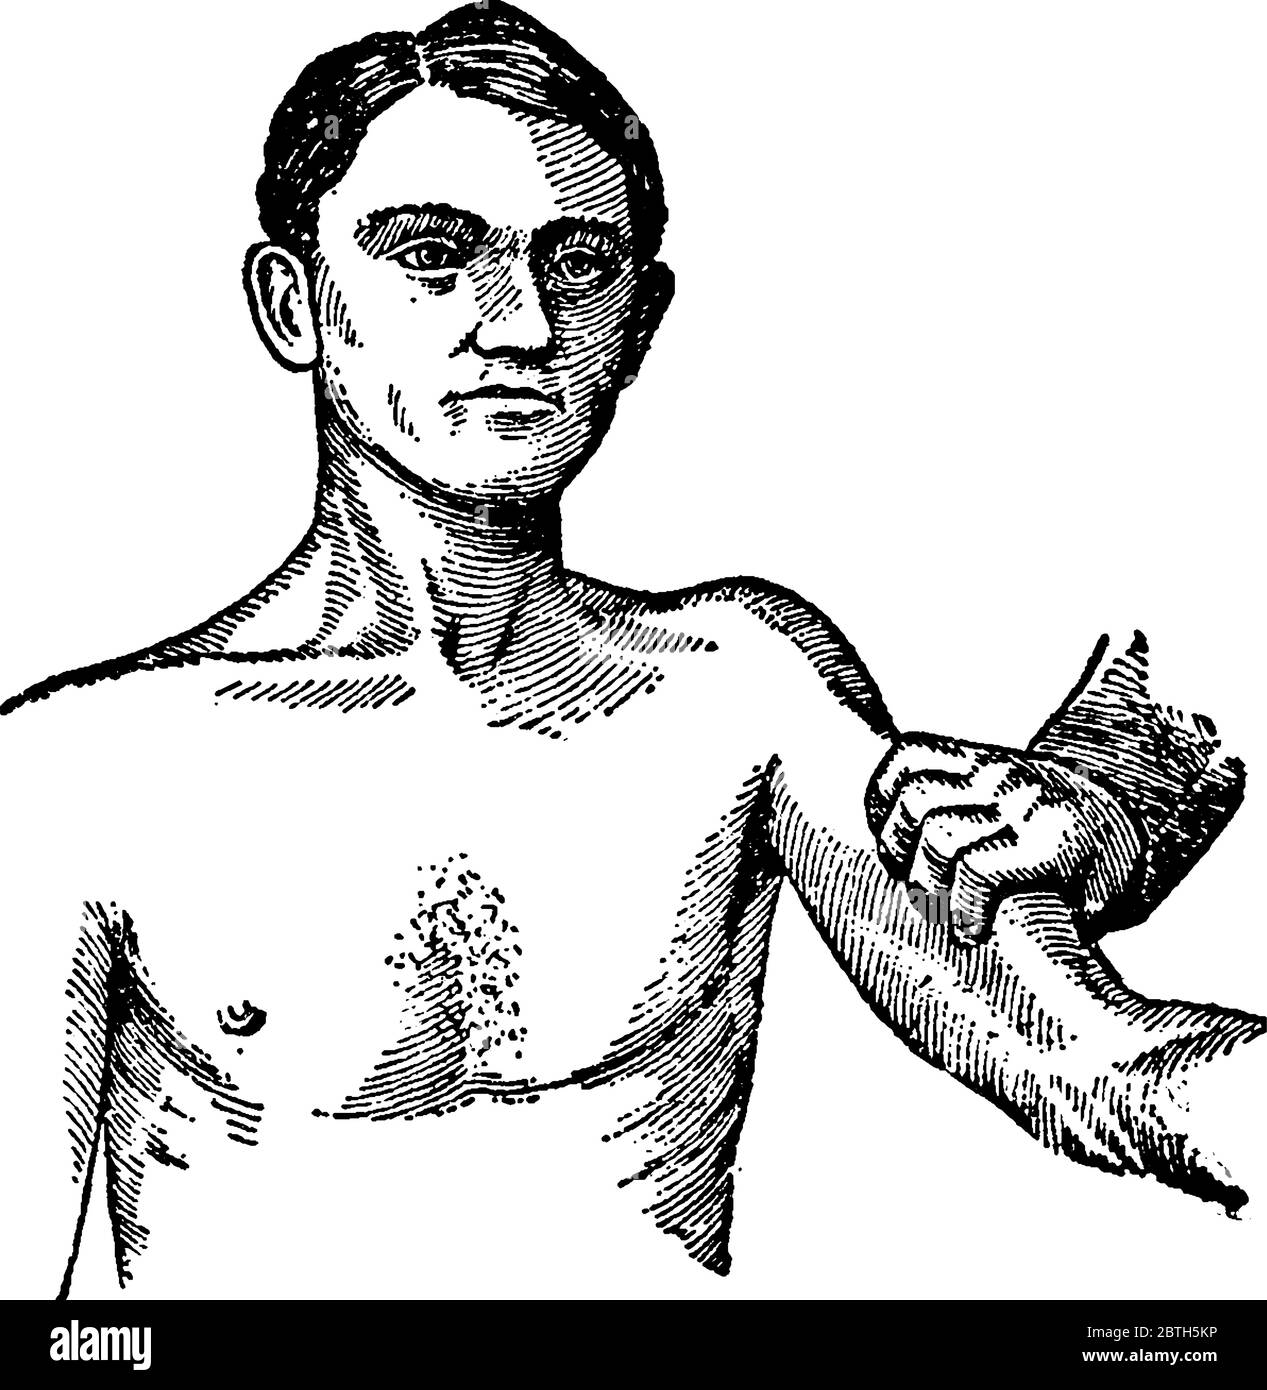 Stellt die Verzweigungs-Kompression dar, bei Blutungen aus irgendeinem Teil des Arms sollte die Verzweigungs-Arterie nach außen gegen den Knochen direkt hinter t gedrückt werden Stock Vektor